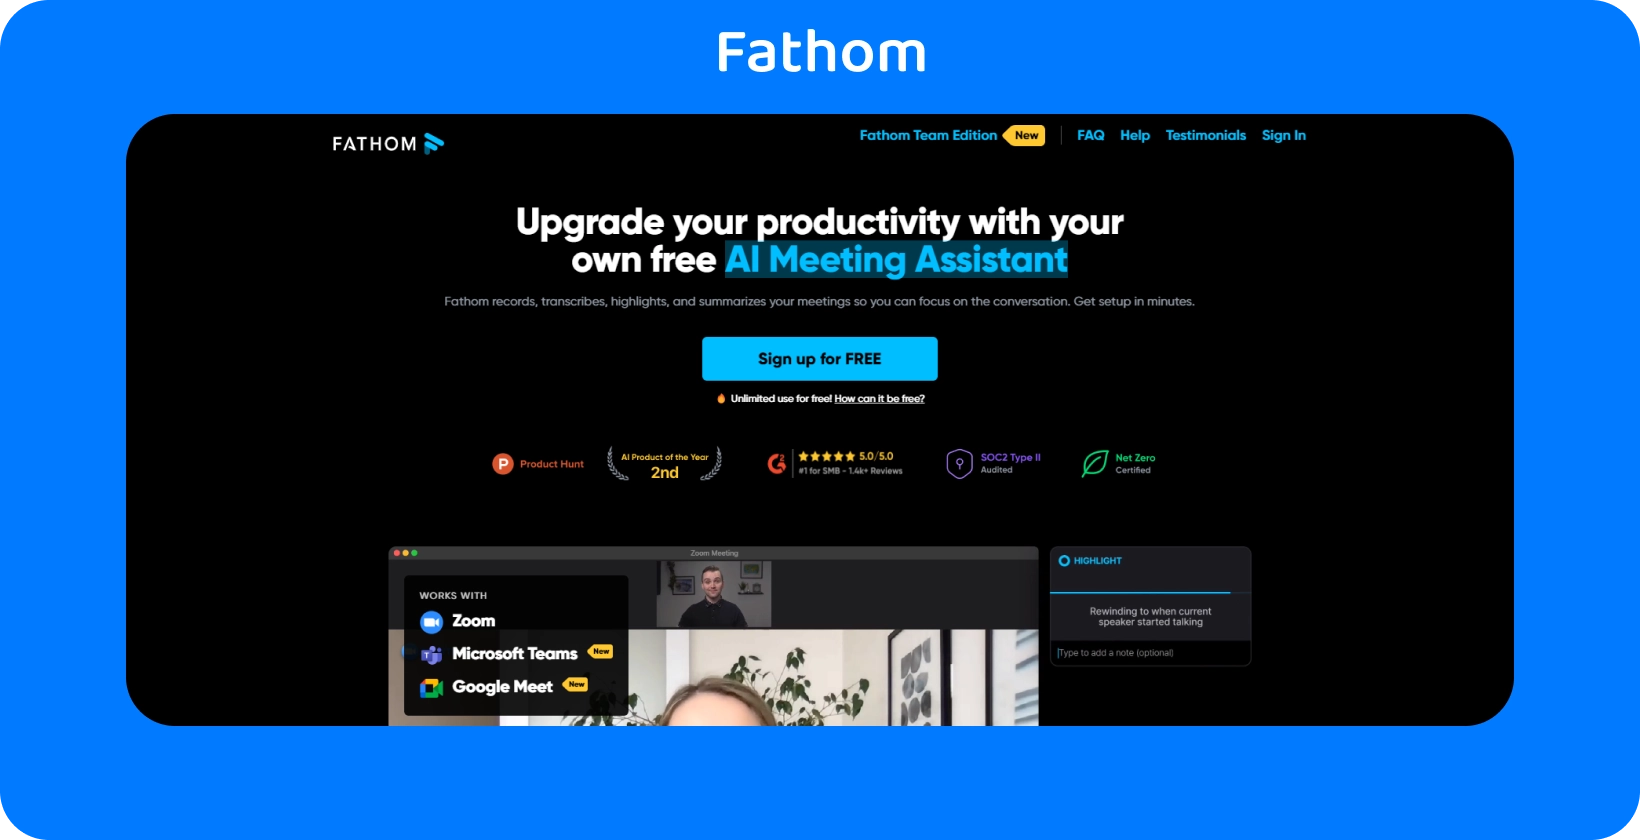 На веб-странице Fathom представлен AI Meeting Assistant для повышения производительности за счет услуг записи и расшифровки.